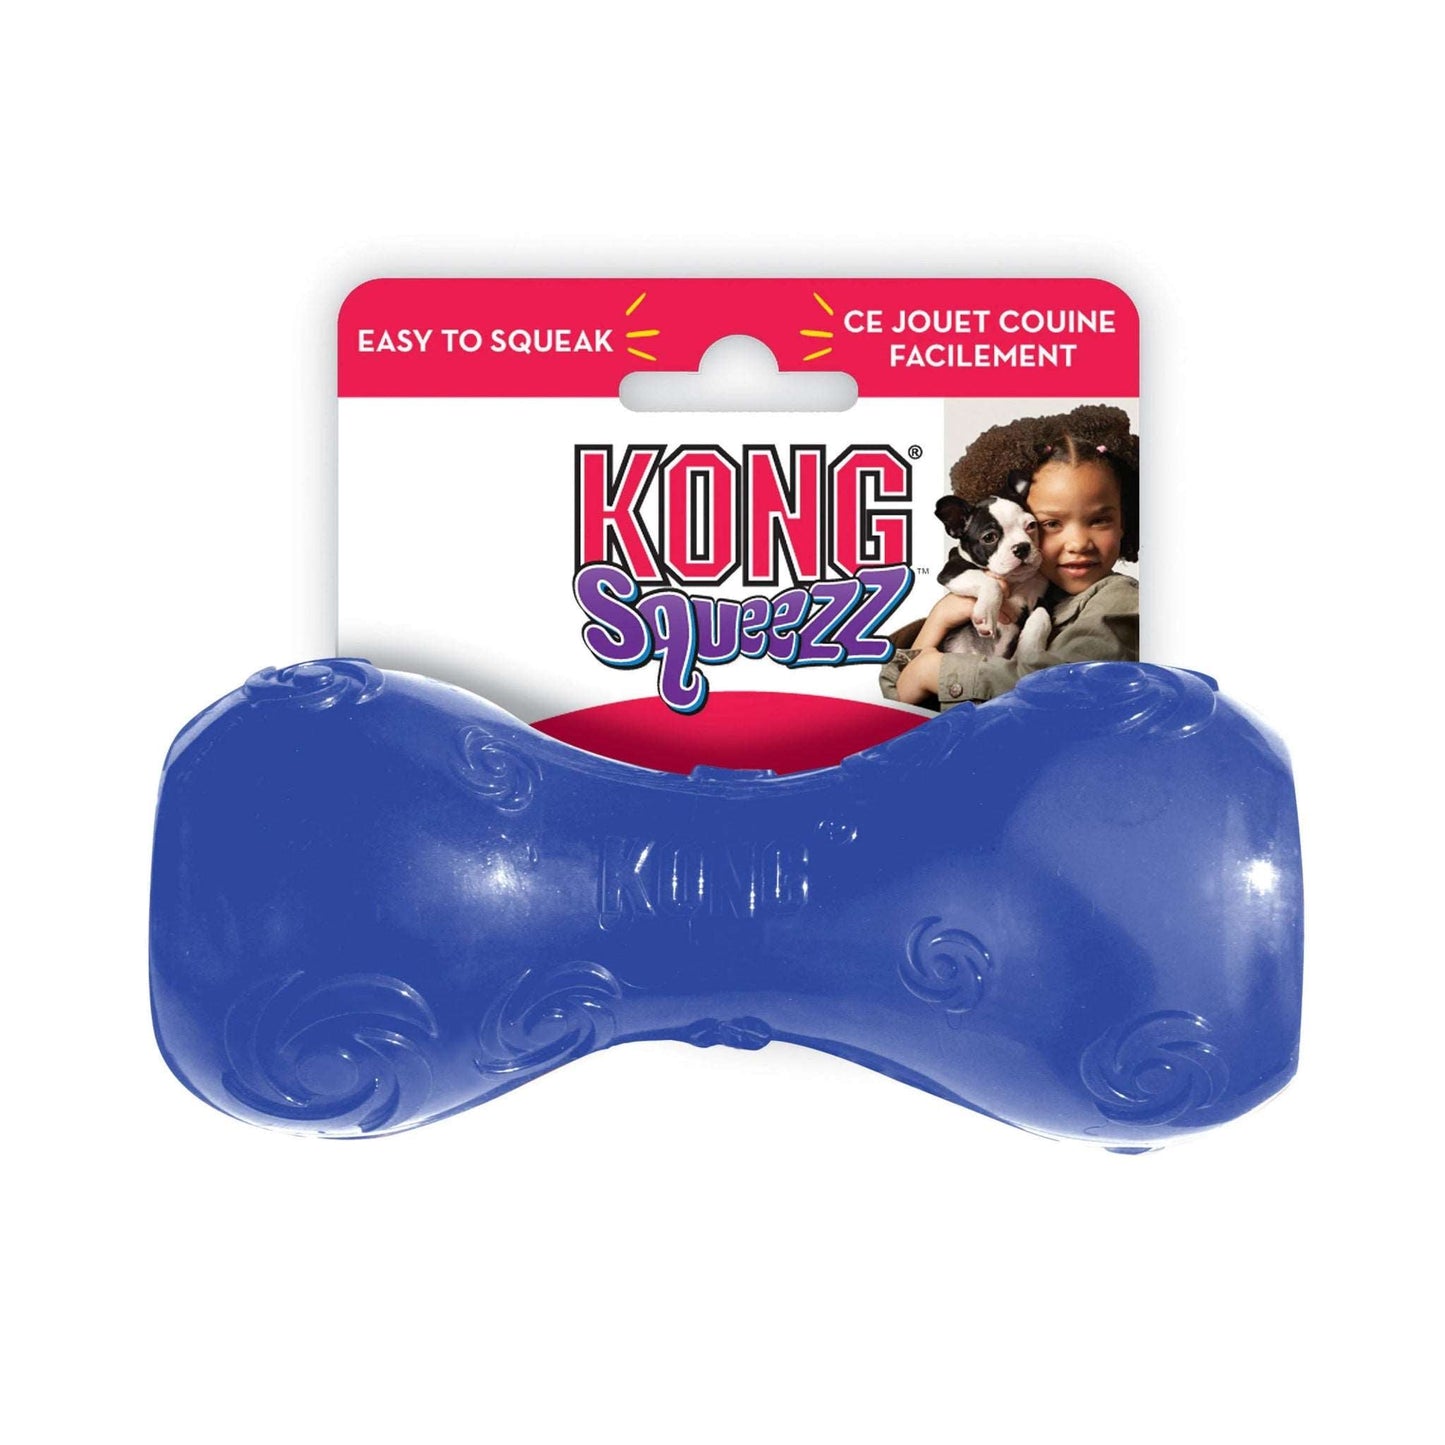 Kong- Juguete Squeezz Masticable para Perro - MiPerro.com